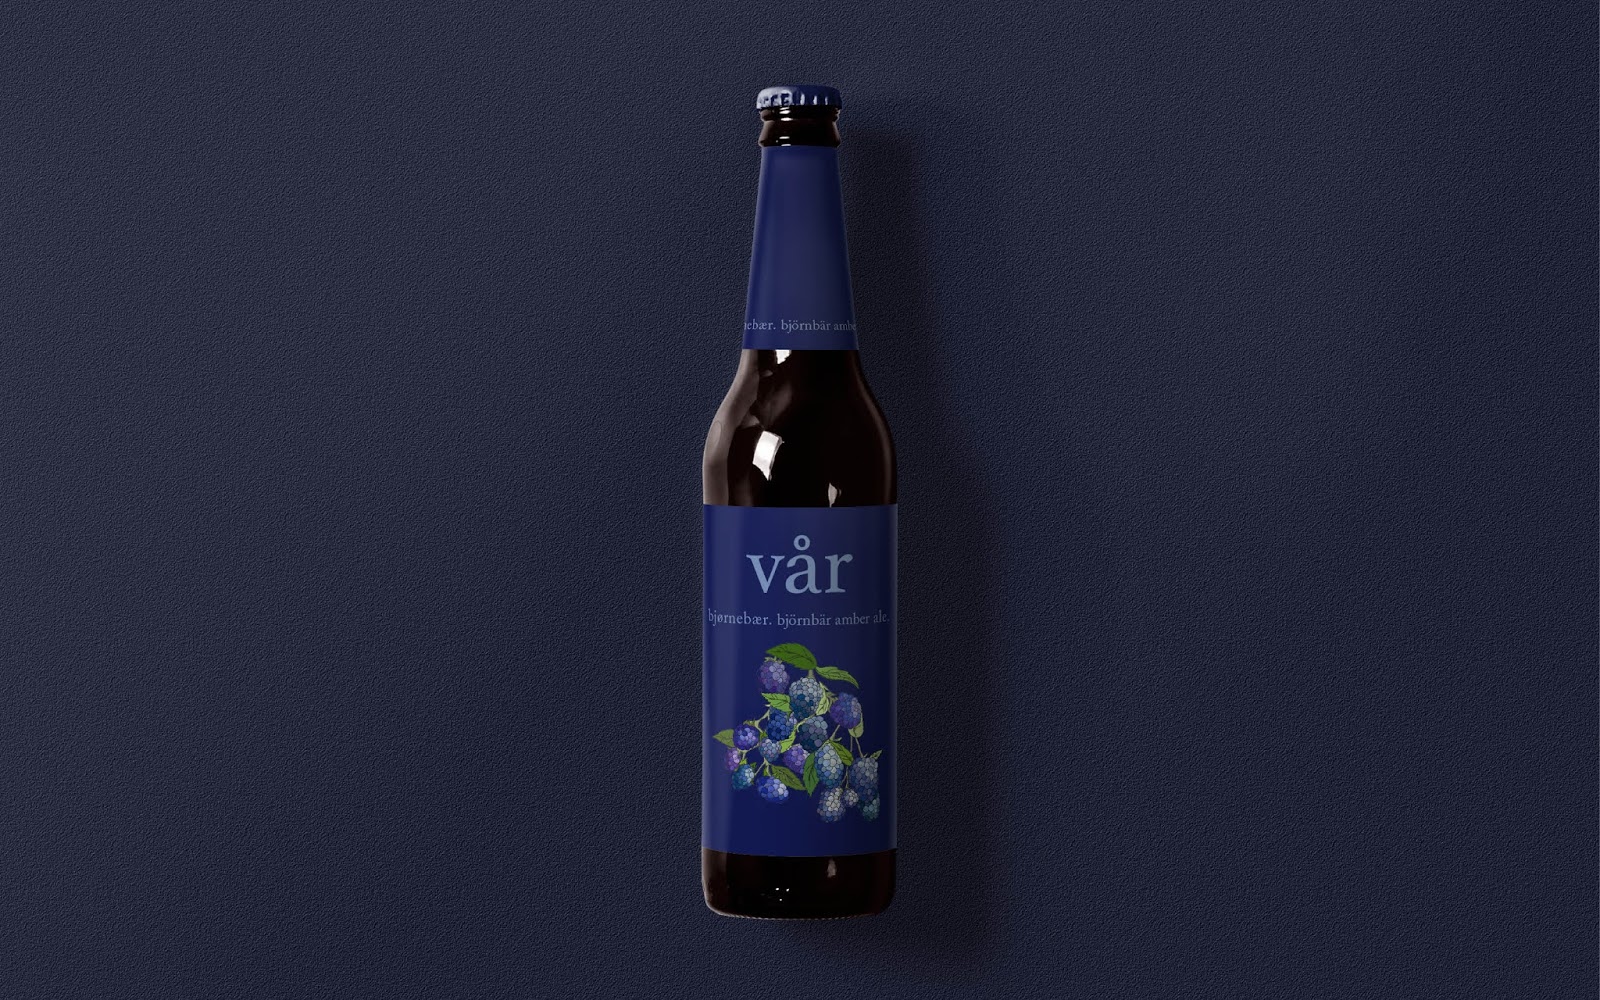 啤酒包装设计西安oe欧亿体育app官方下载
品牌包装设计品牌策划VI设计